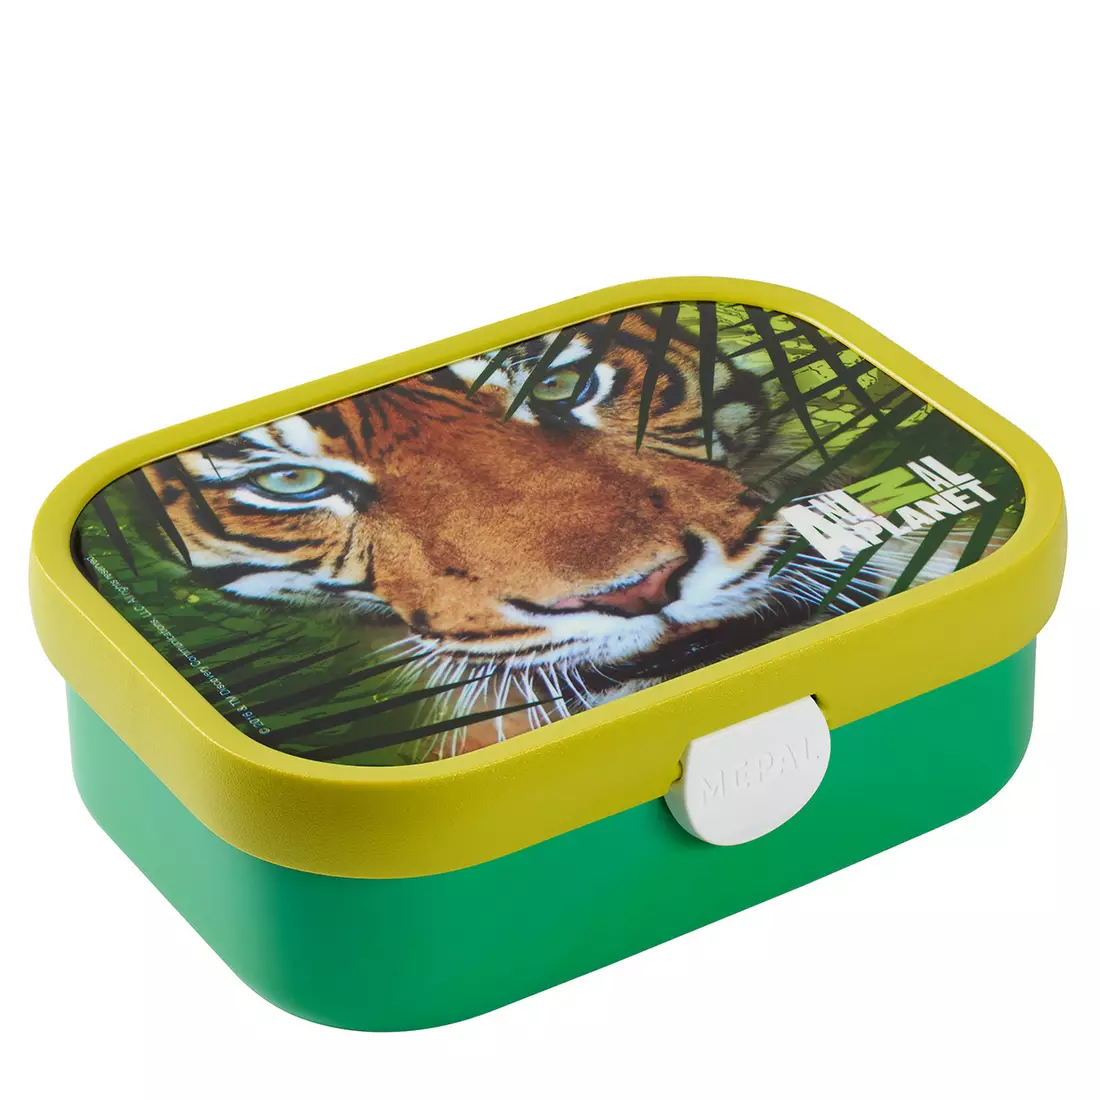 Mepal Campus Animal Planet Tiger pentru copii lunchbox, verde galben